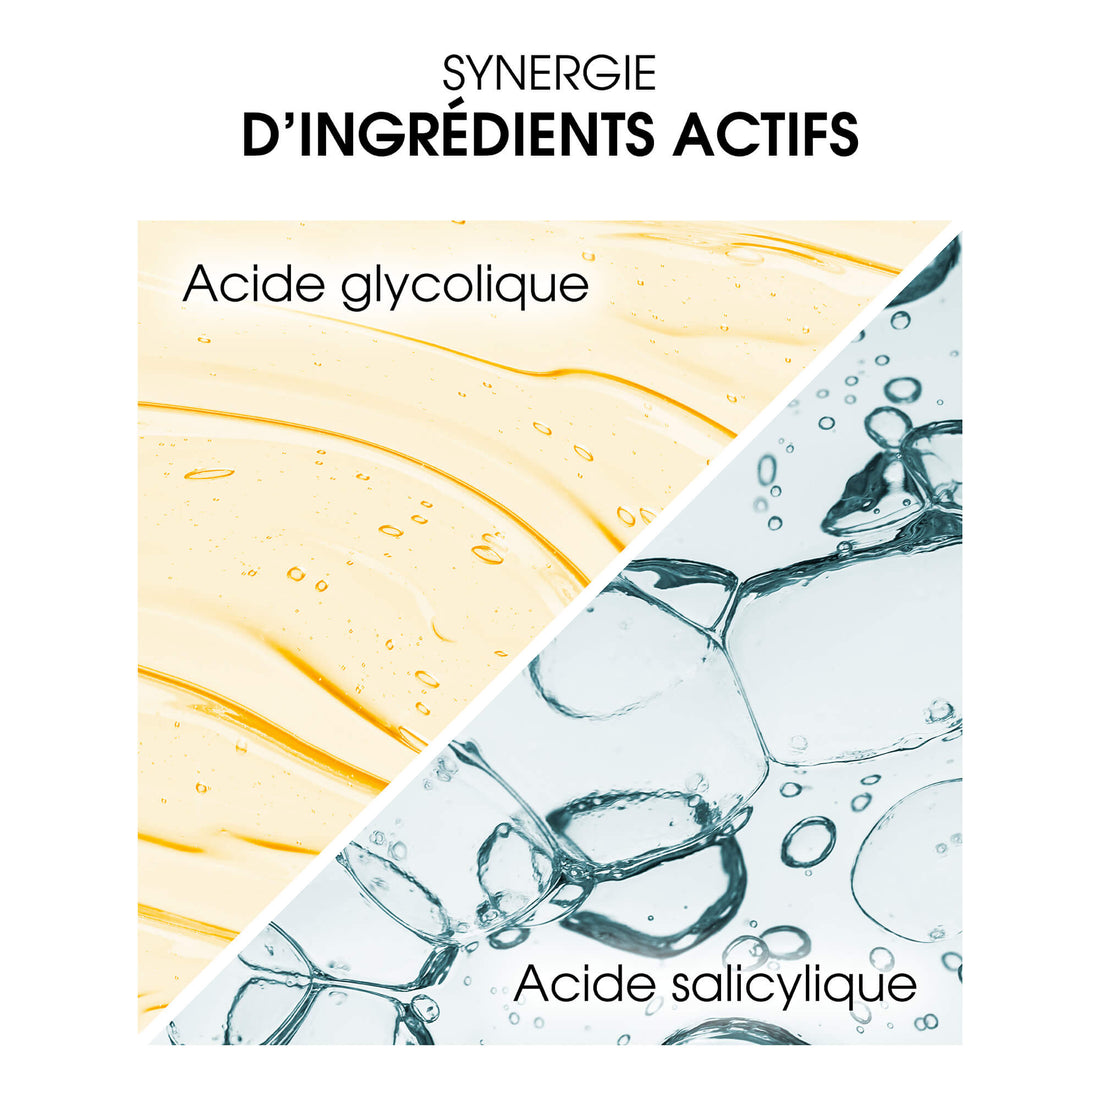 synergie acide glycolique salicylique